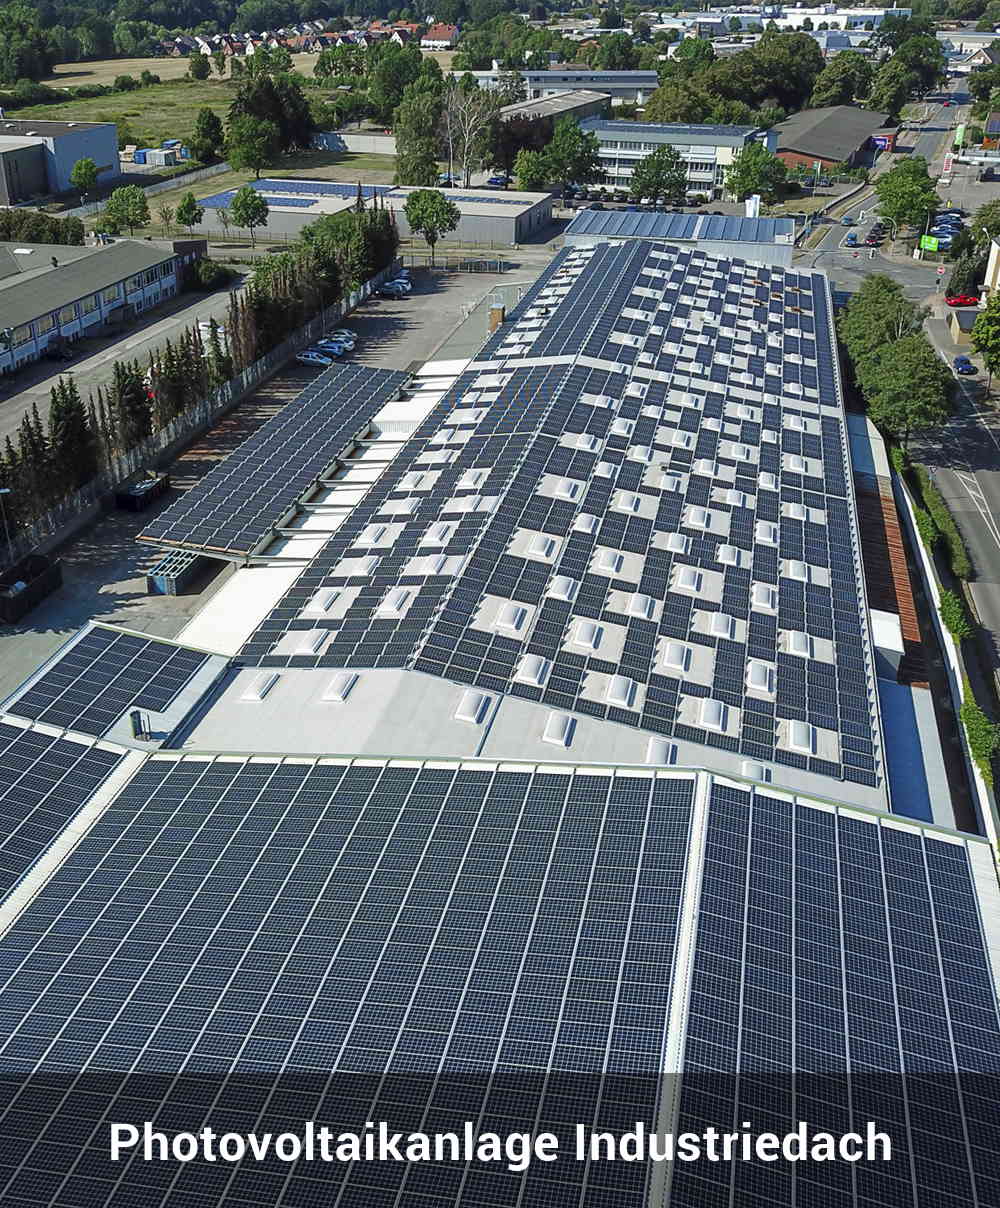 Photovoltaikanlage Industriedach